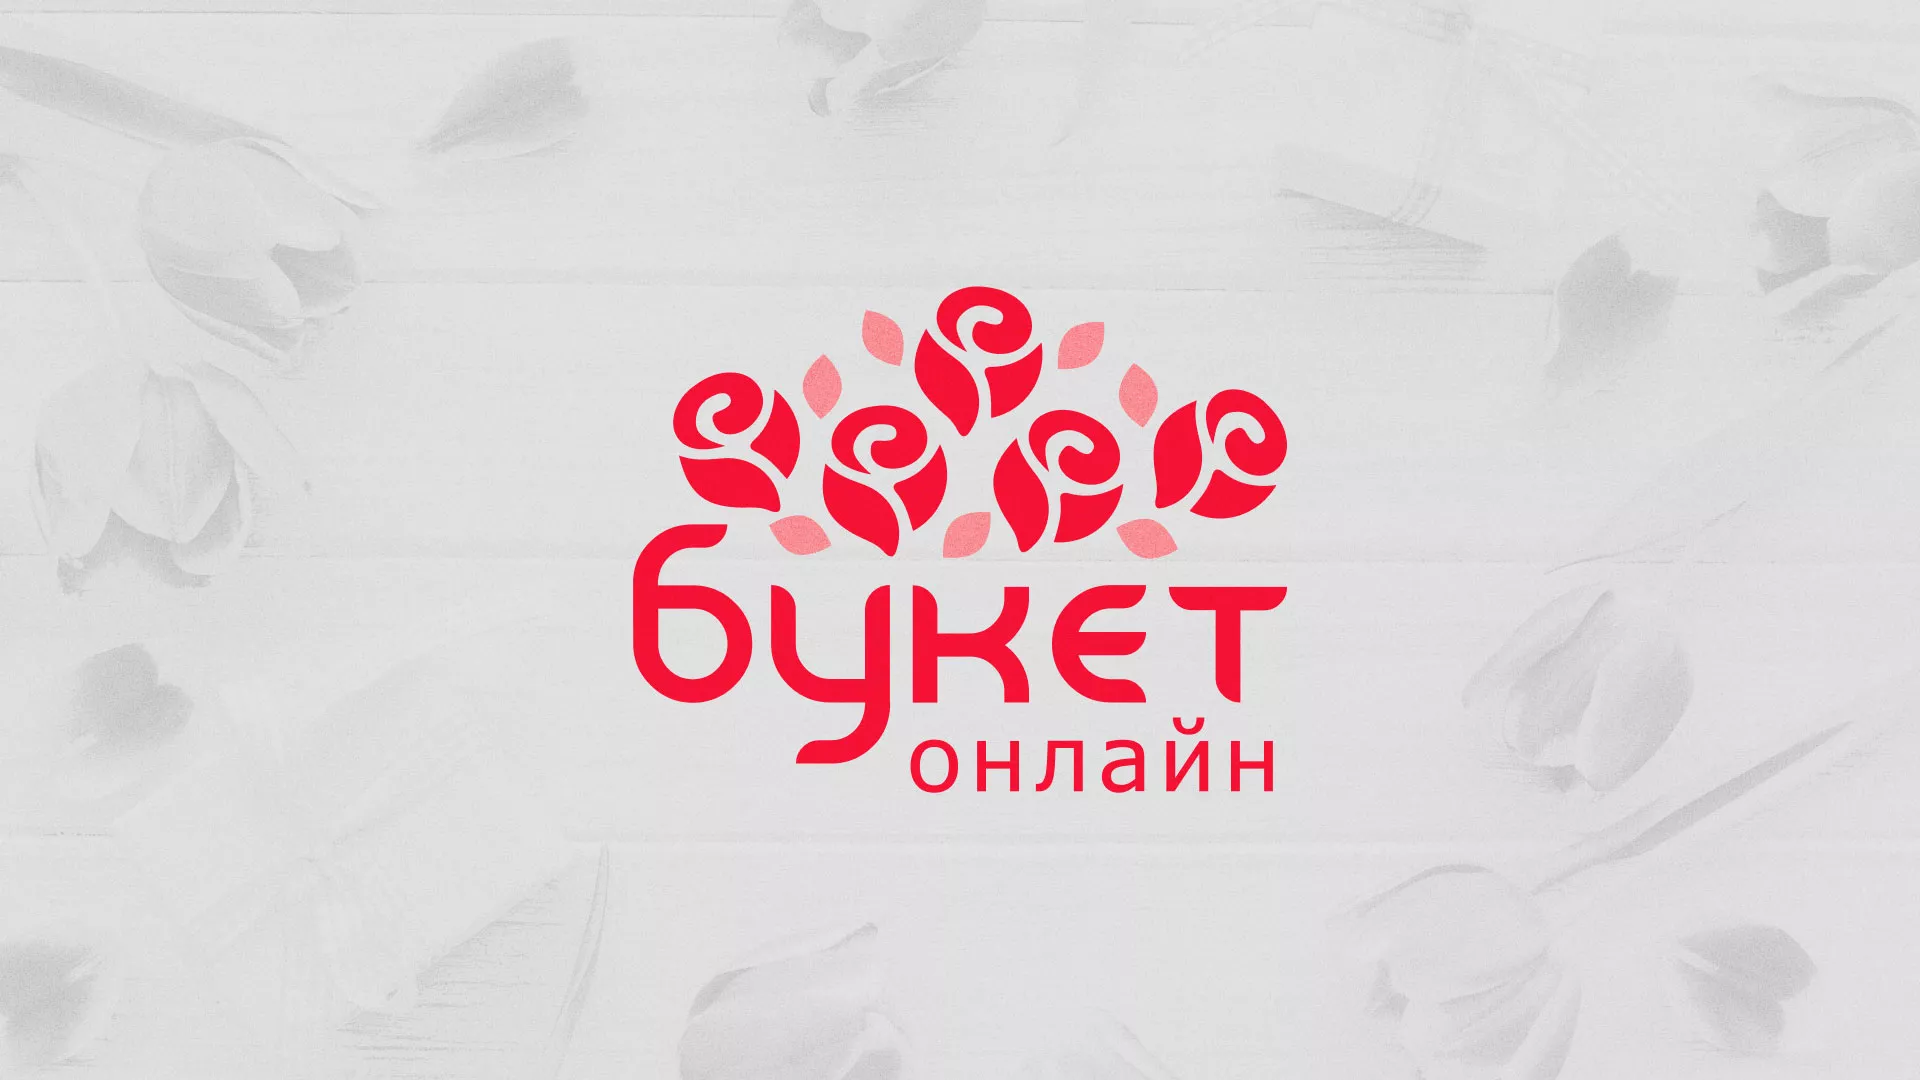 Создание интернет-магазина «Букет-онлайн» по цветам в Черняховске